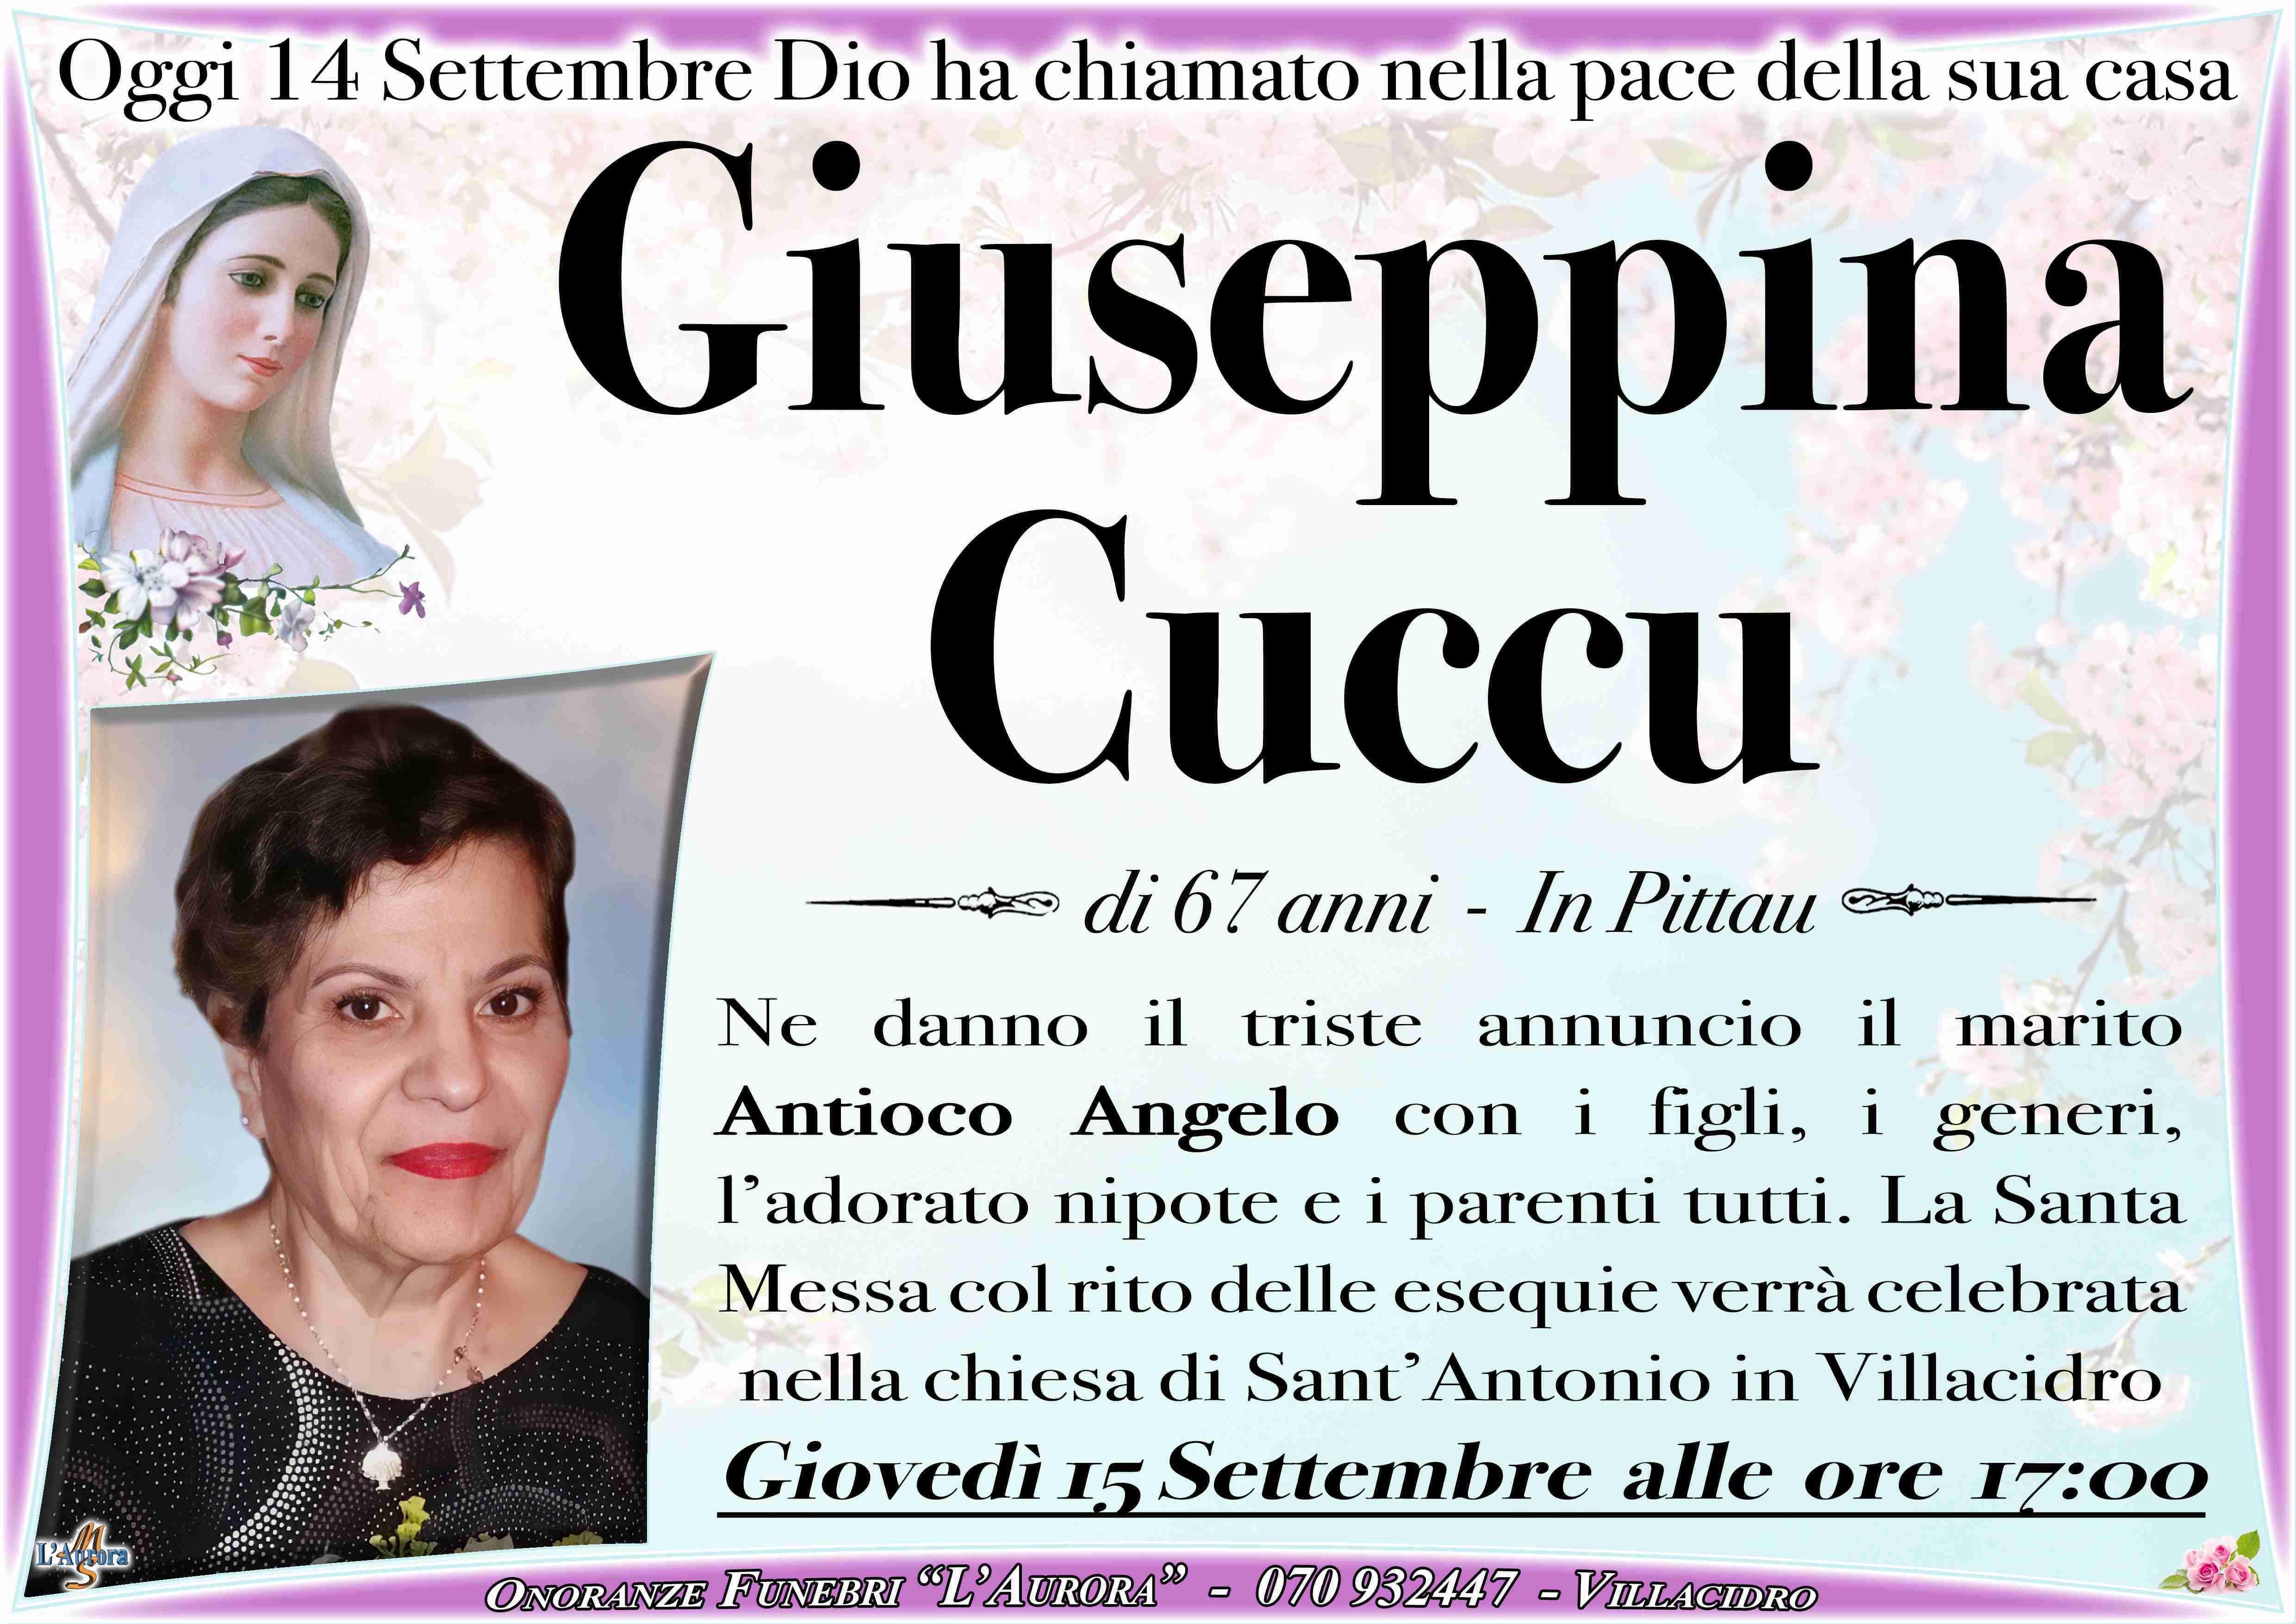 Giuseppina Cuccu